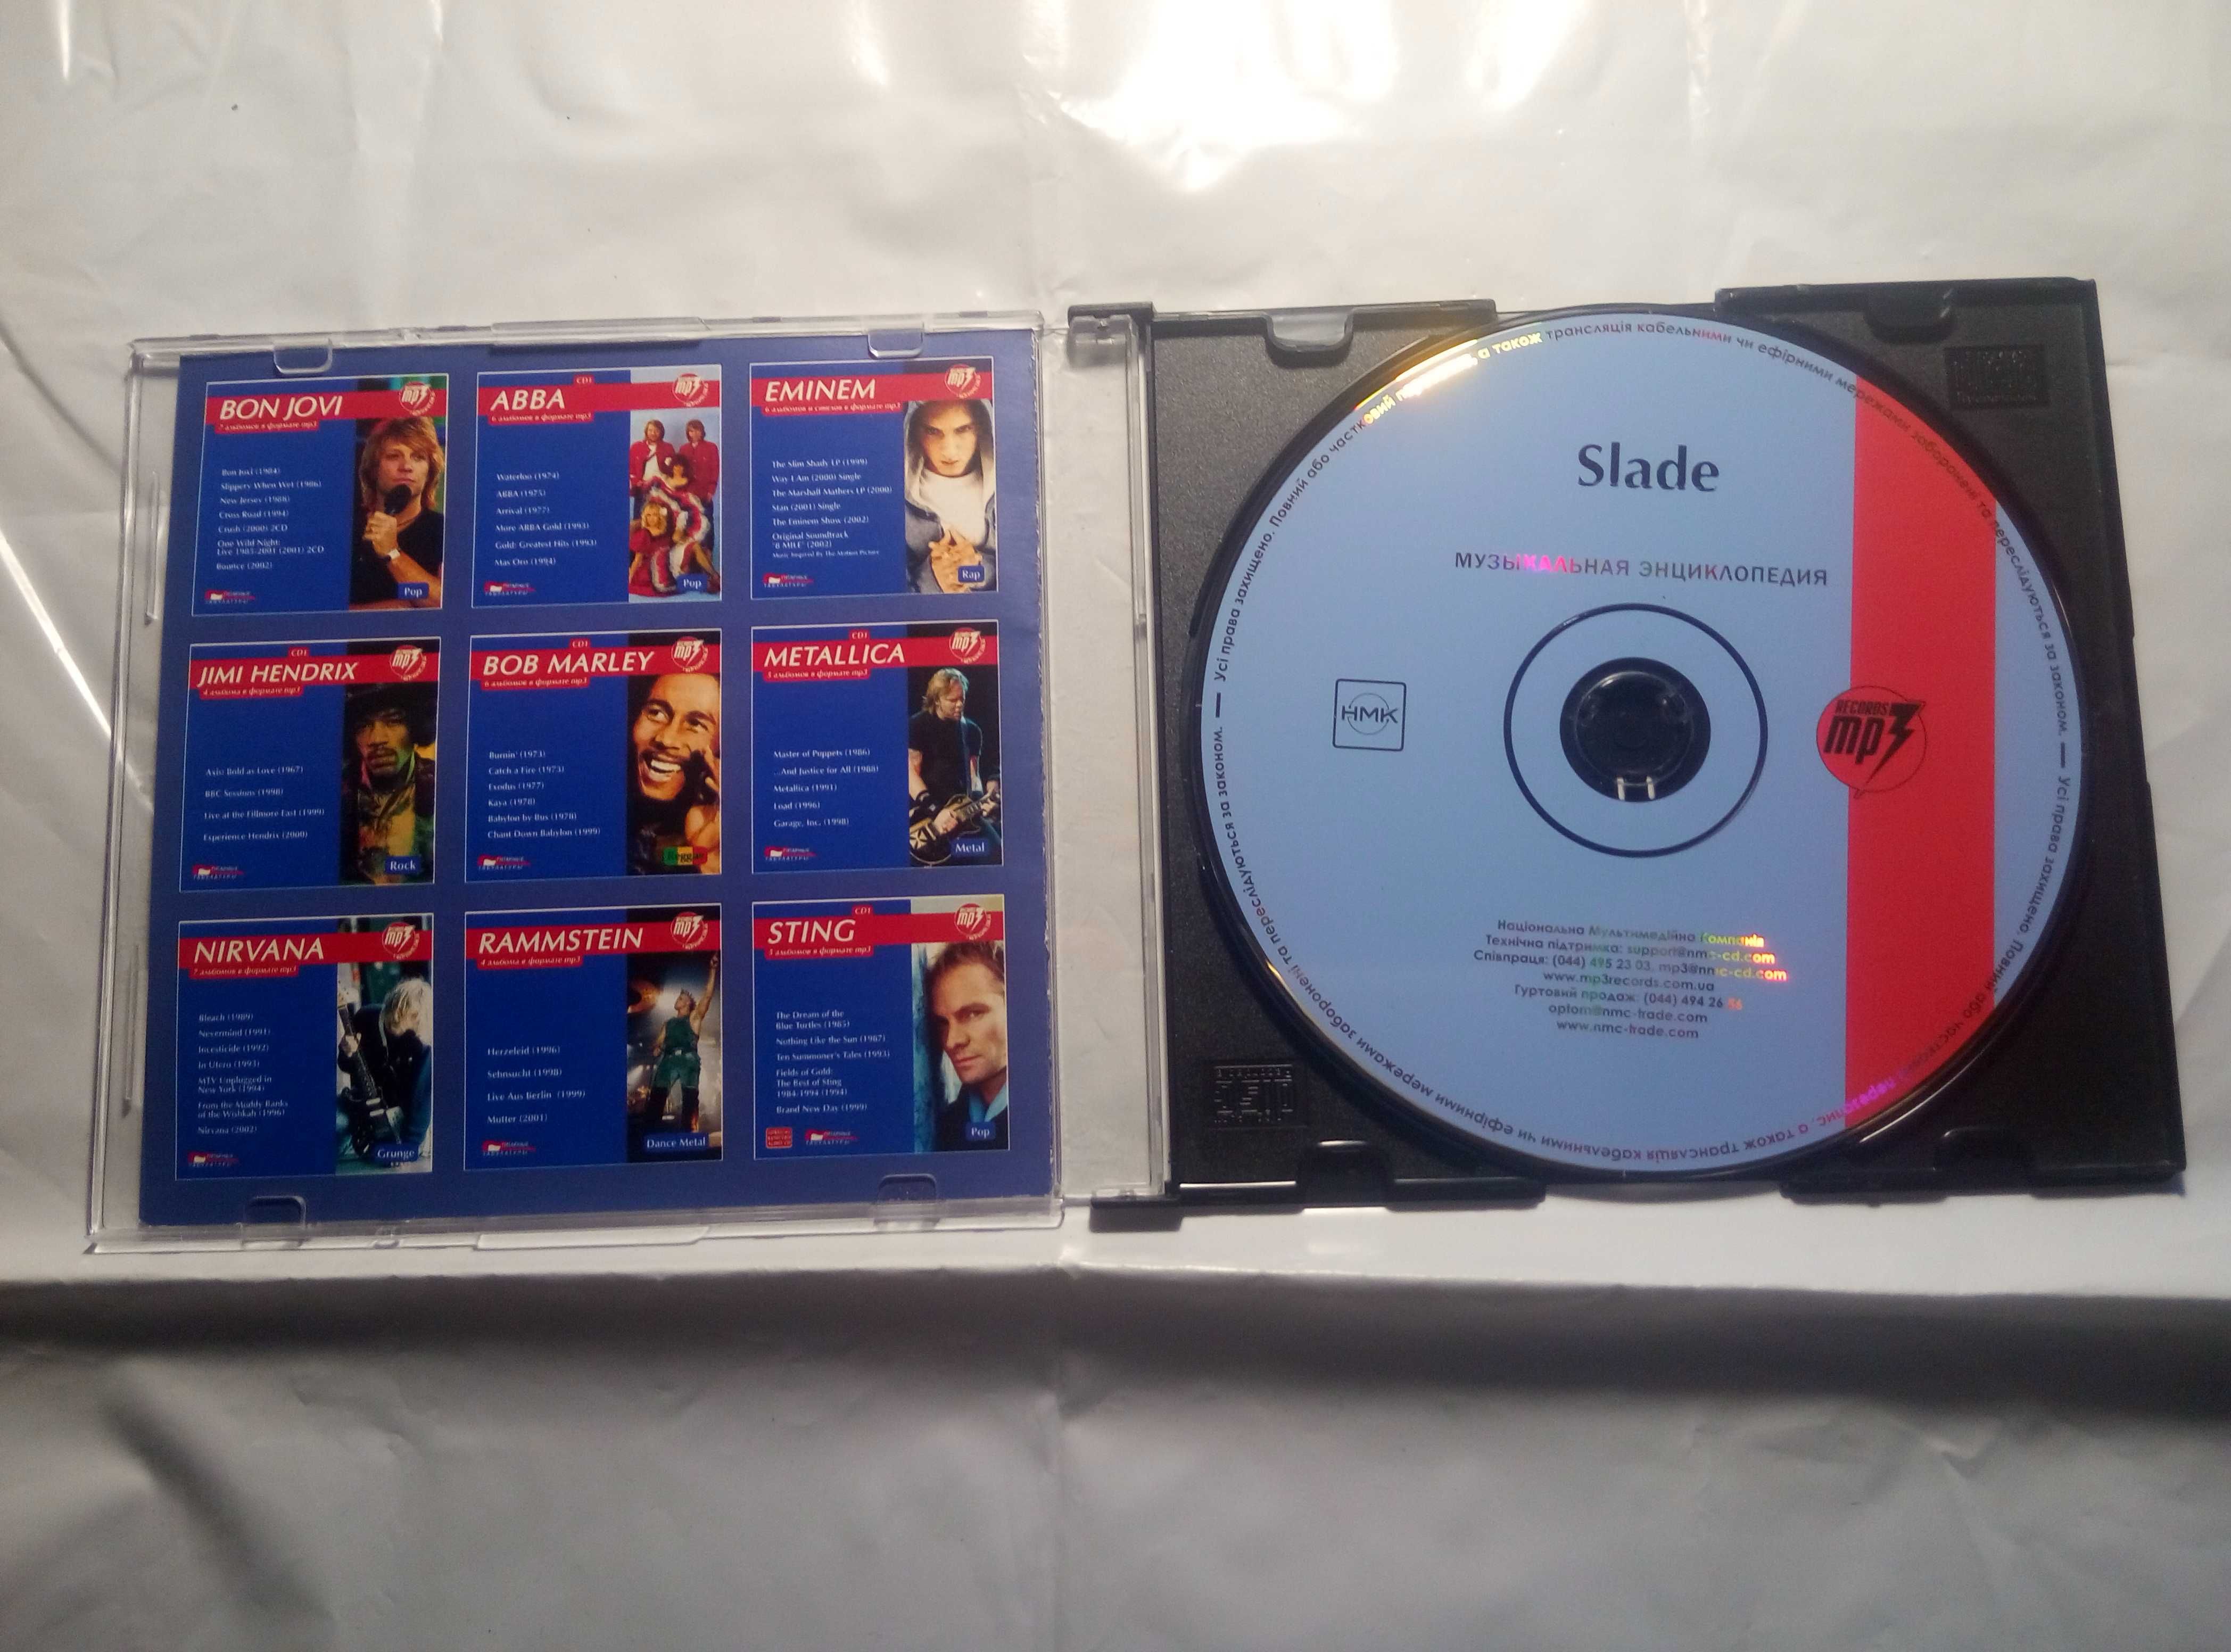 Slade группа музыкальная Энциклопедия 10 альбомов Мр-3 диск